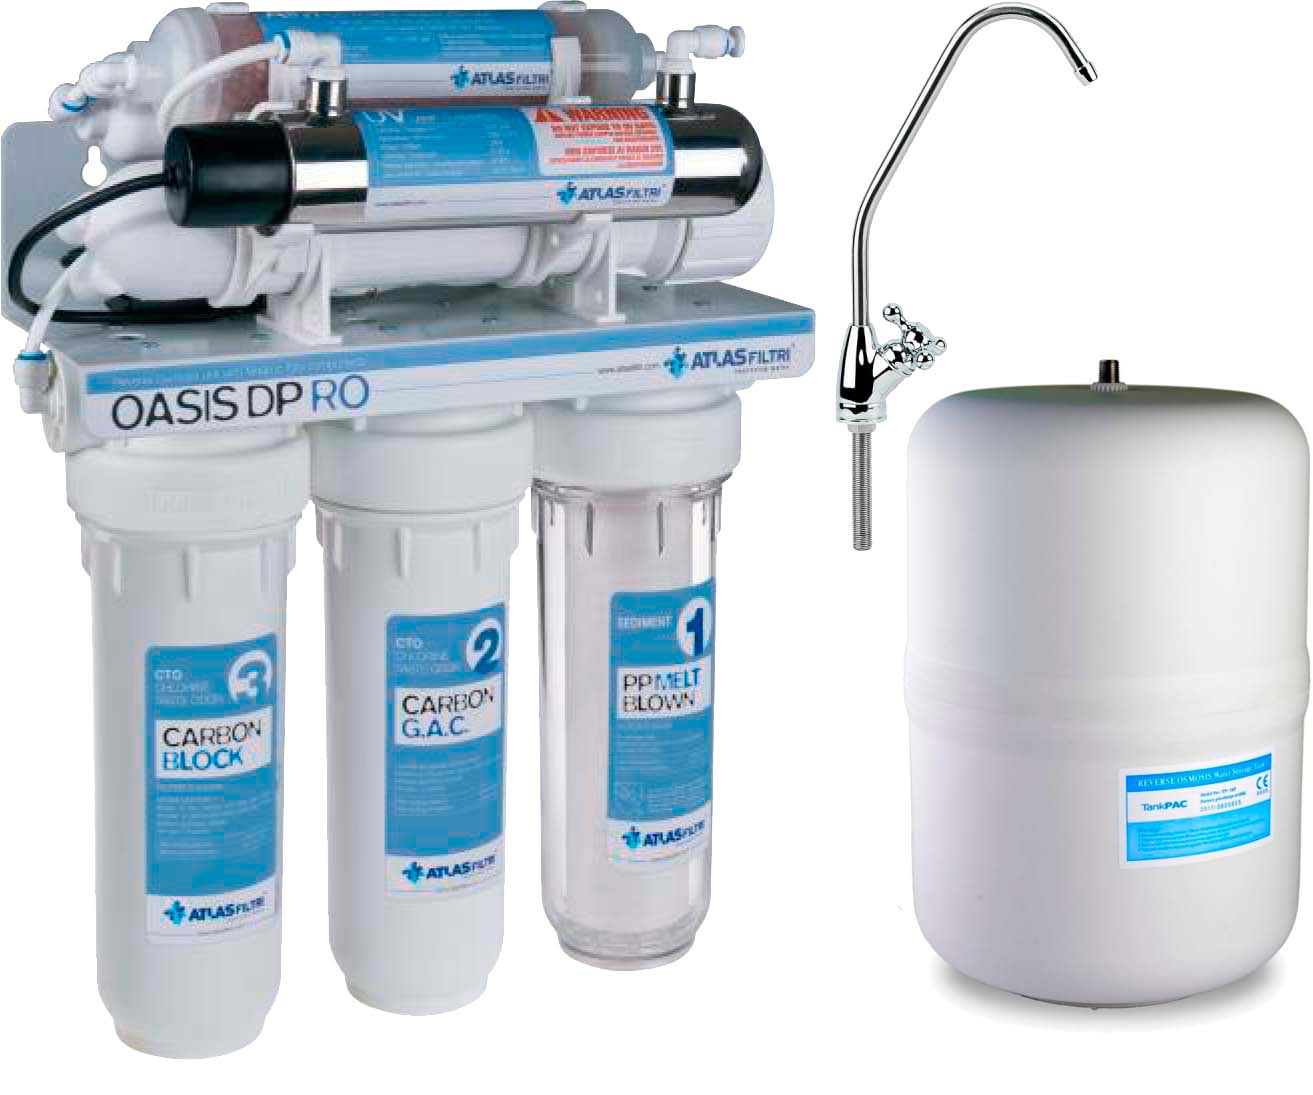 Фильтр Atlas Filtri для воды Atlas Filtri Oasis DP UV лампа, минерализатор (RE6075330)